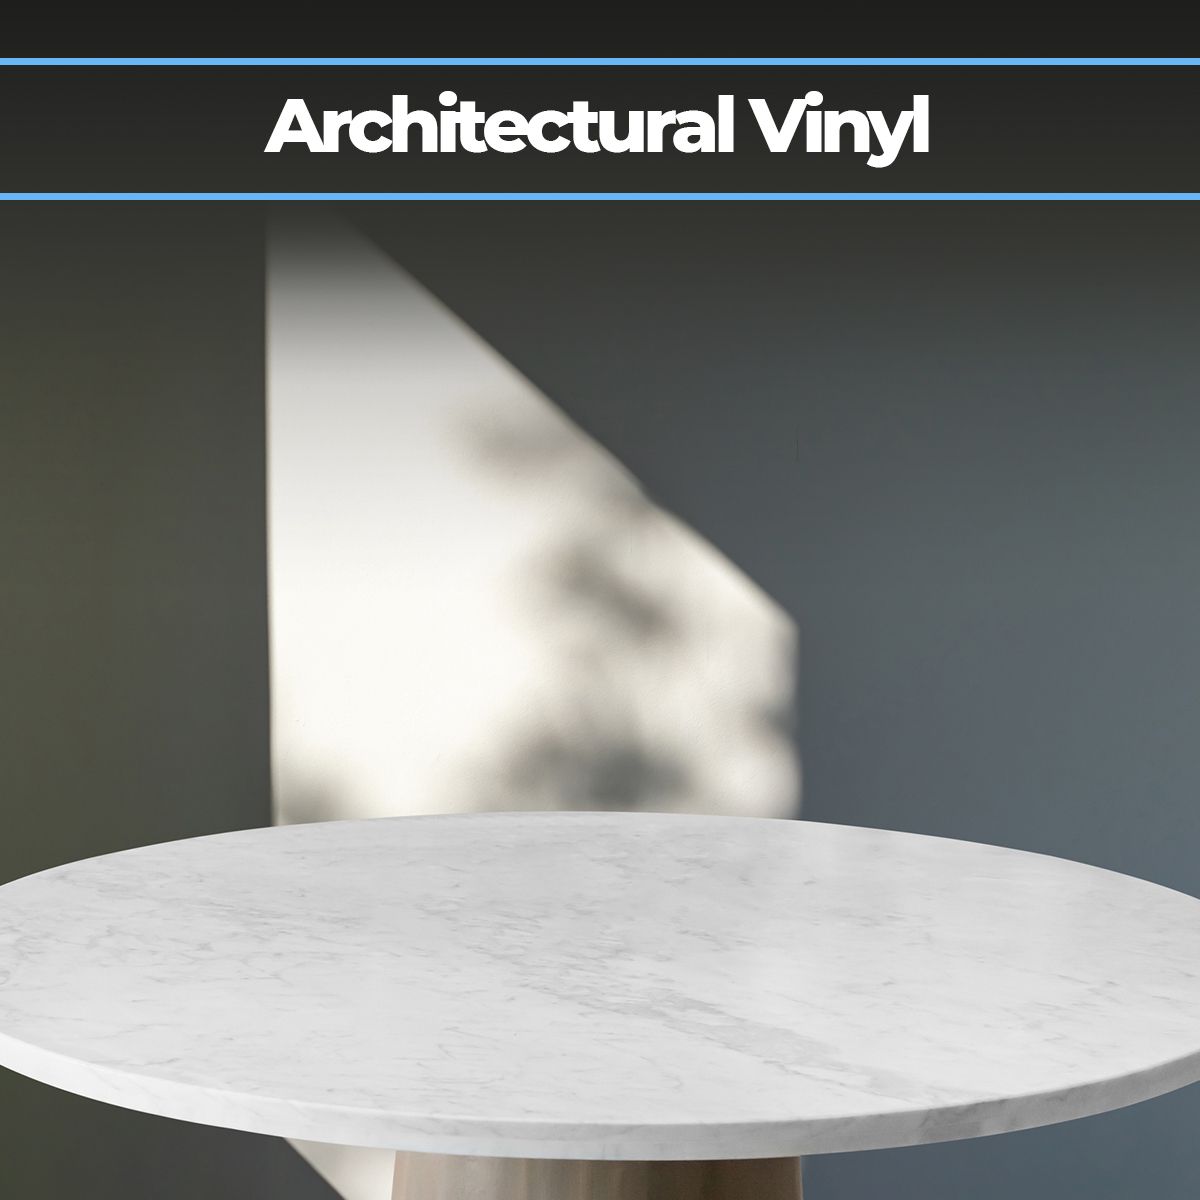 Architectural Vinyl